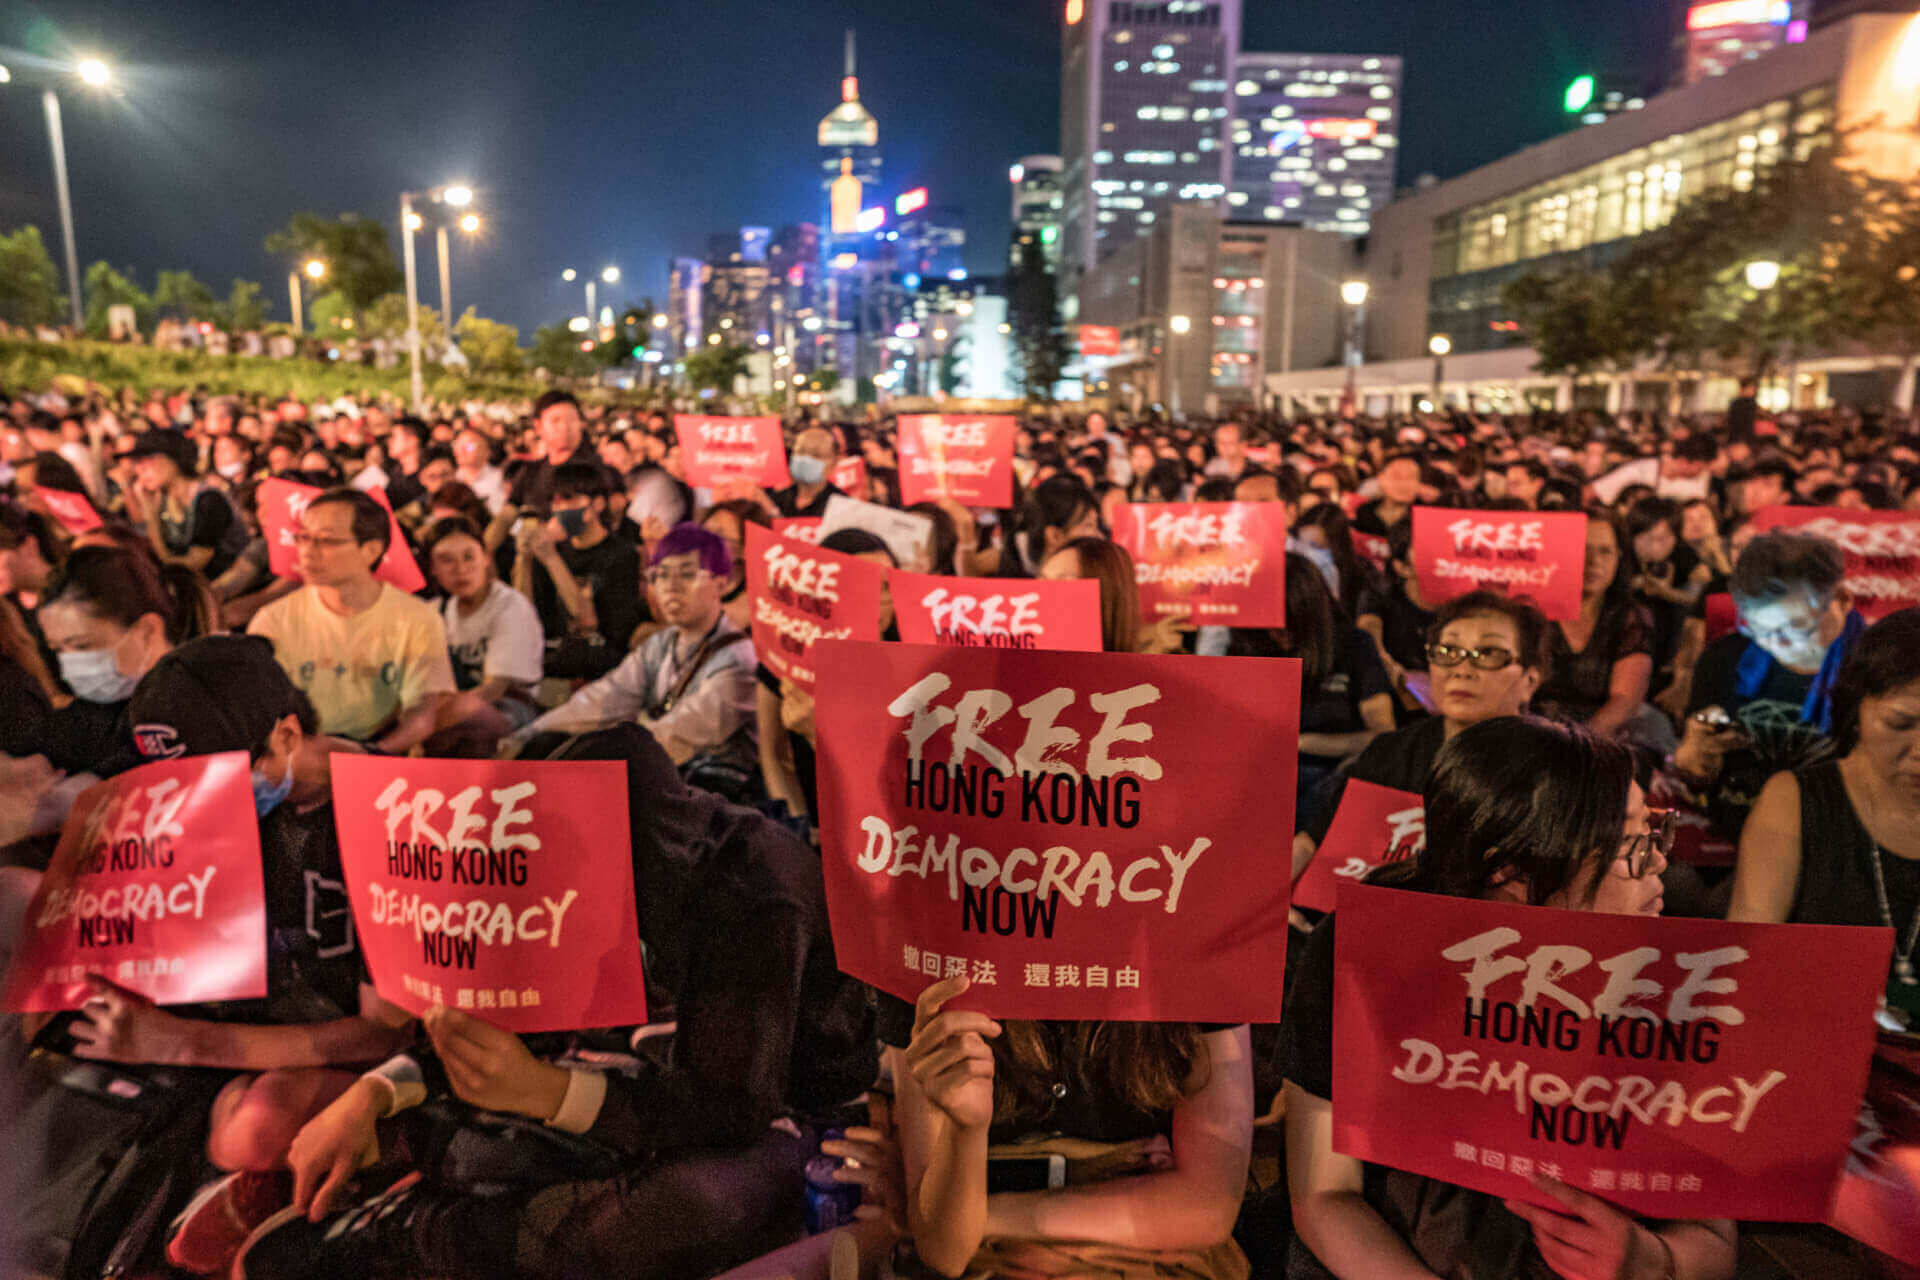 हांगकांग का वफादारी कानून उसकी स्वायत्तता के लिए बड़ा खतरा